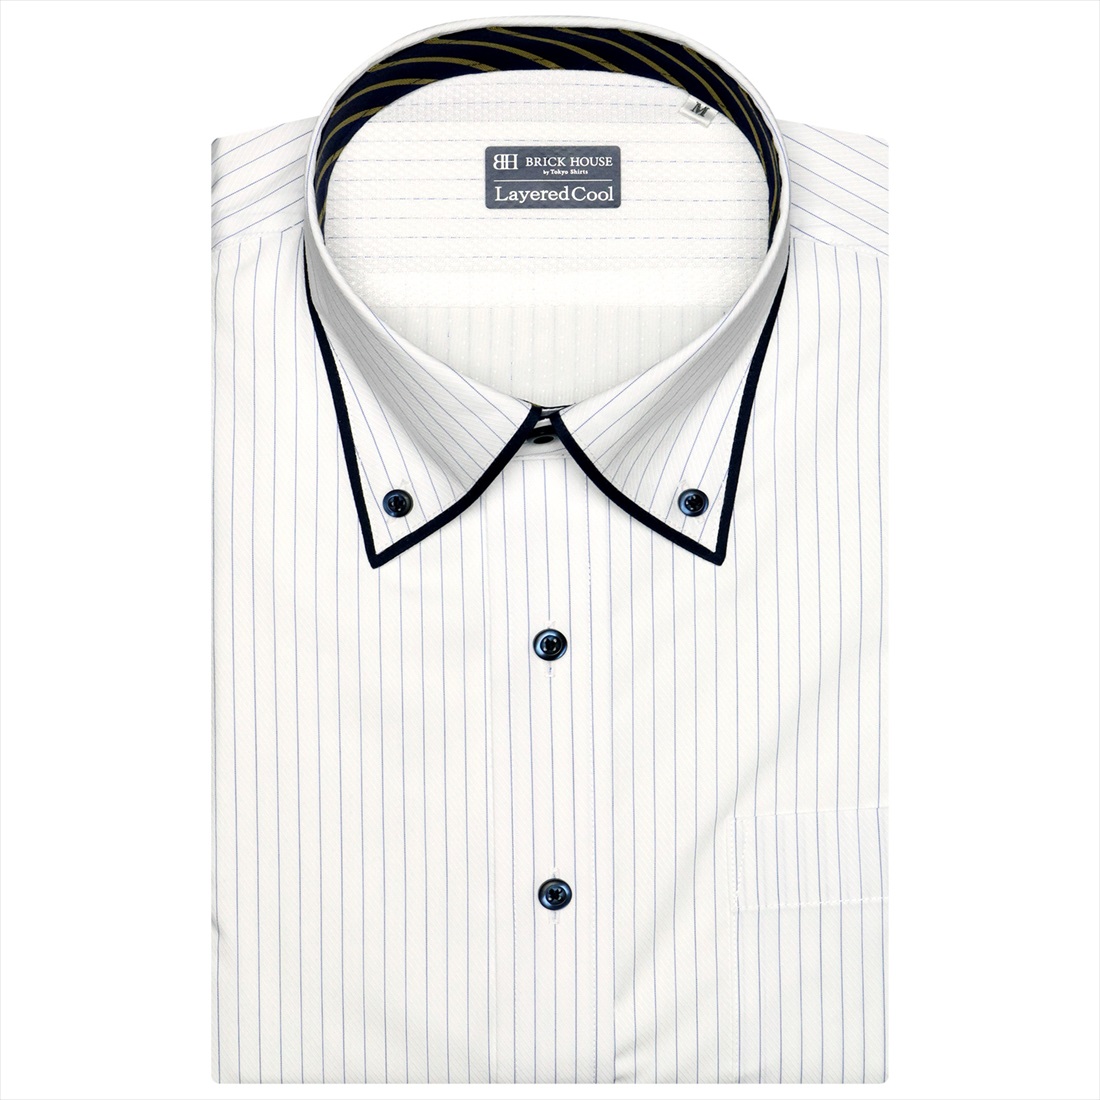 【パープル】(M)【超形態安定】 形態安定 ボタンダウンカラー 半袖 ワイシャツ